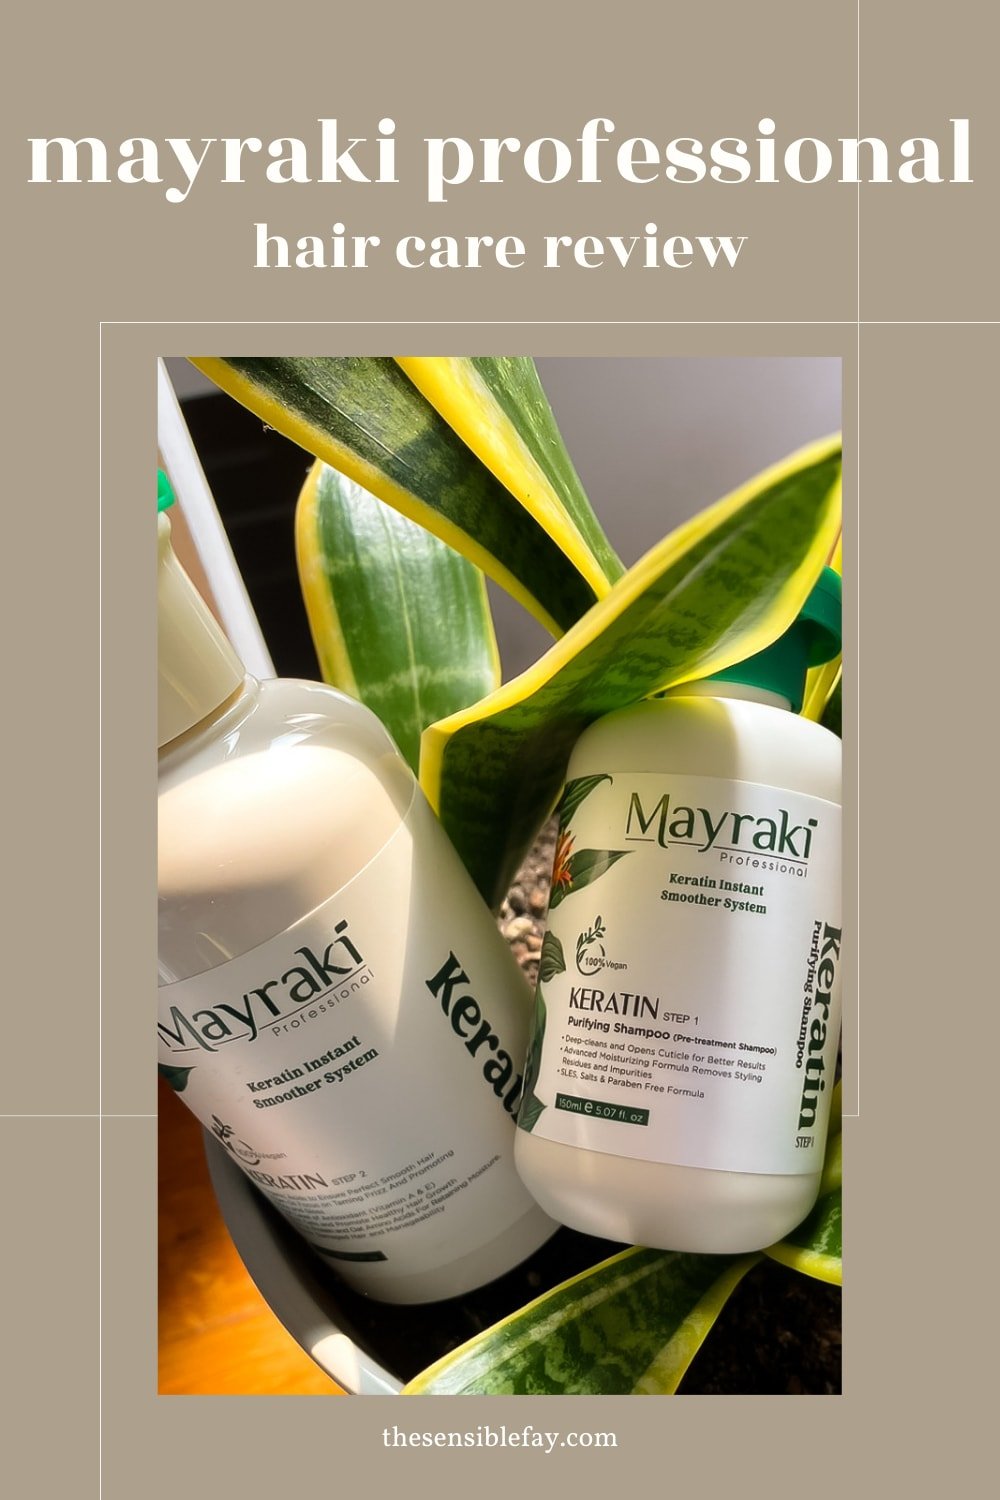 Mayraki Professional Hair Care Review.jpg